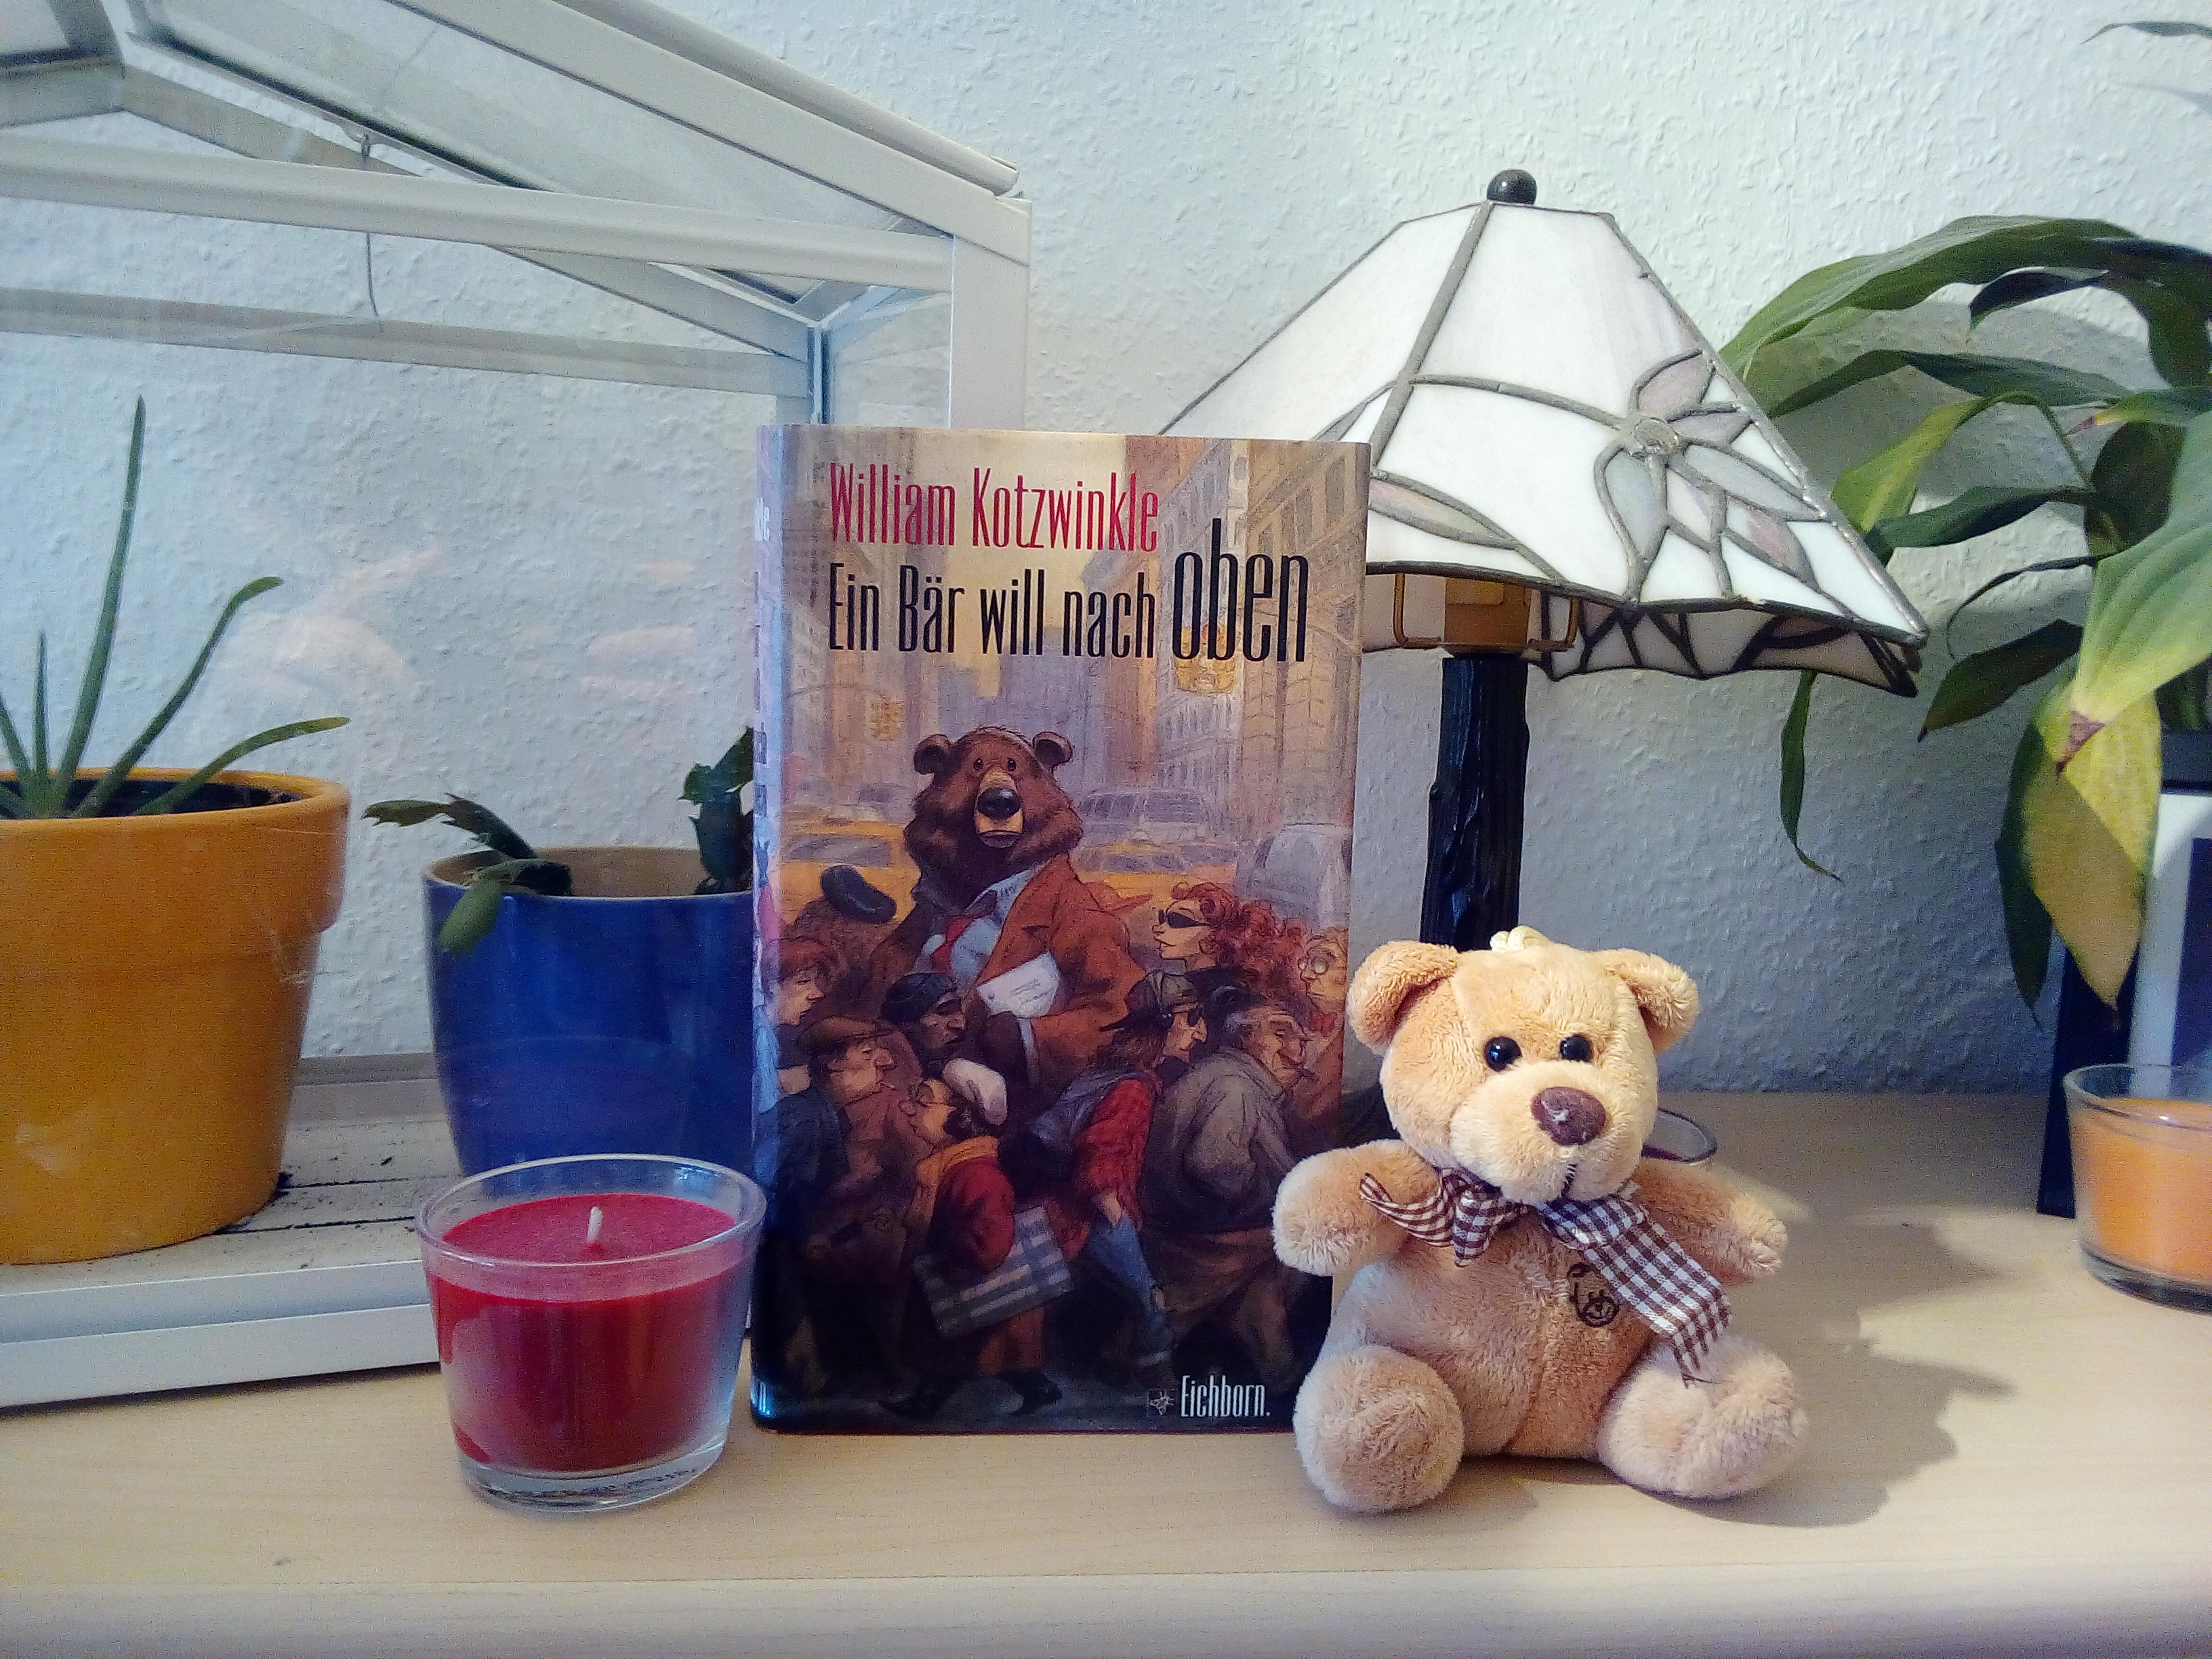 [BücherinBüchern] Der blinde Literaturbetrieb: "Ein Bär will nach oben" von William Kotzwinkle